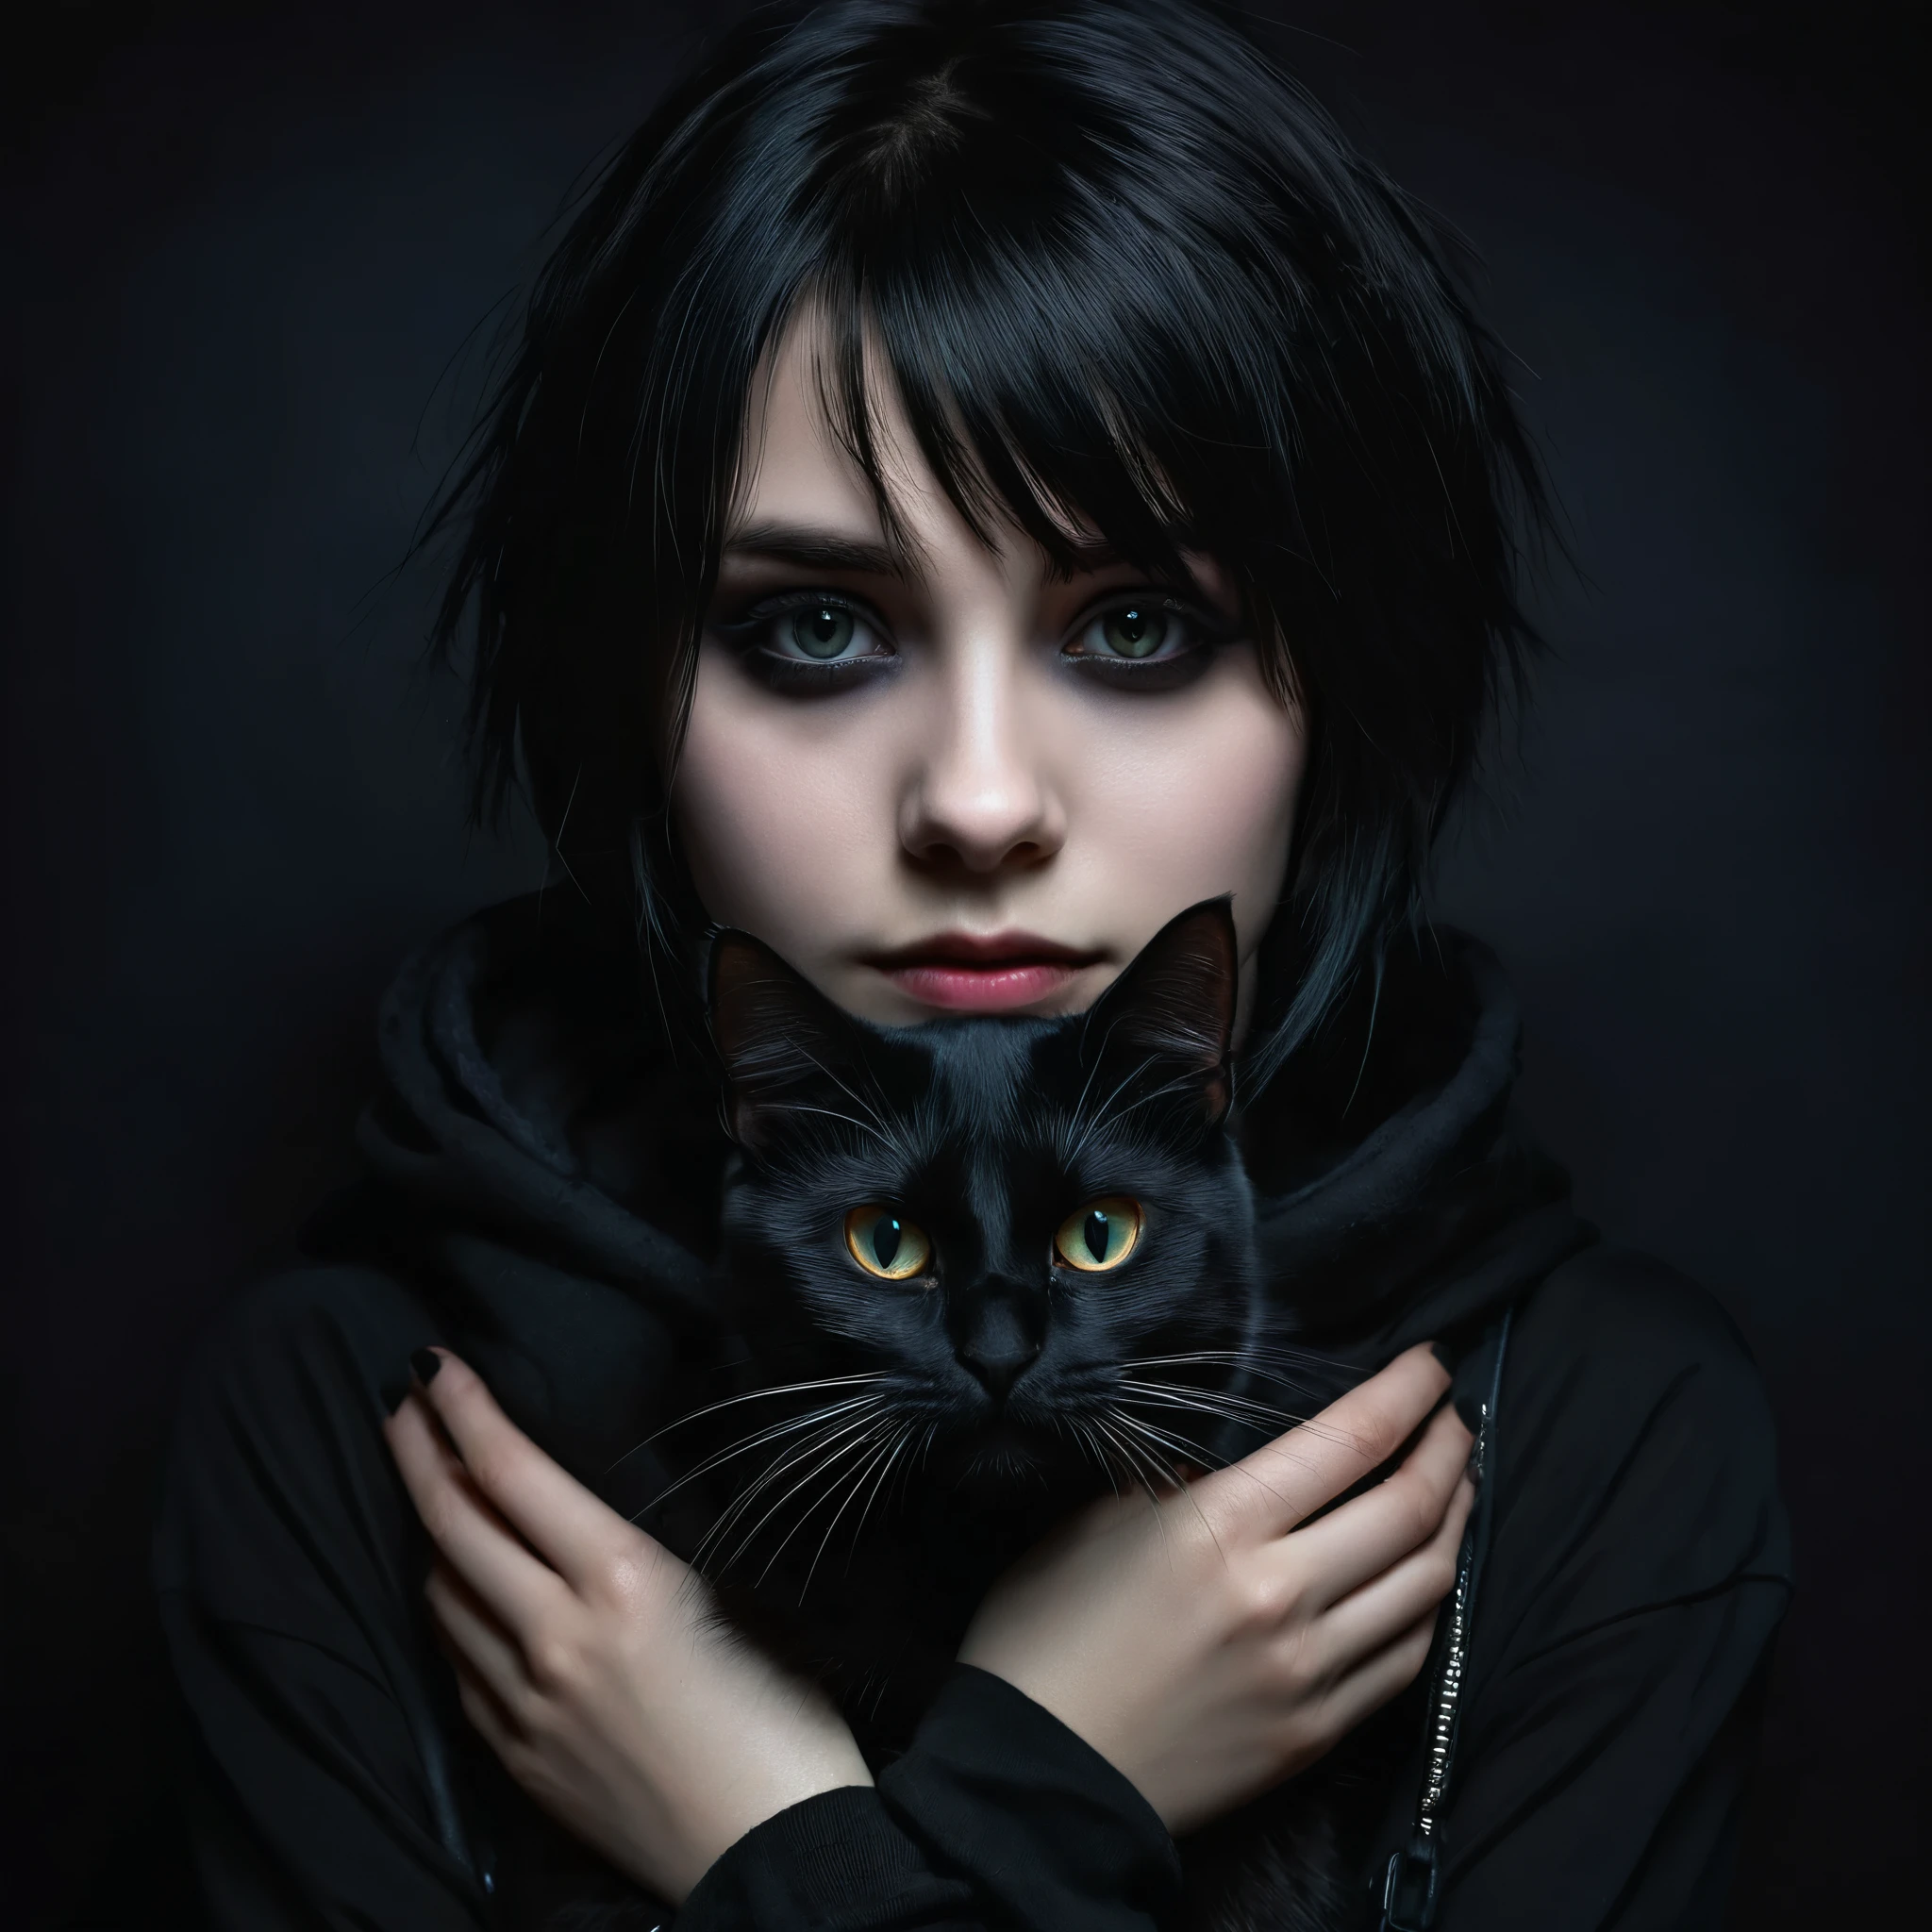 una chica emo con un gato negro en sus manos, cara detallada, maquillaje oscuro, expresión emocional, ropa negra, fondo oscuro, chiaroscuro lighting, cinematográfico, dramático, malhumorado, pintura digital